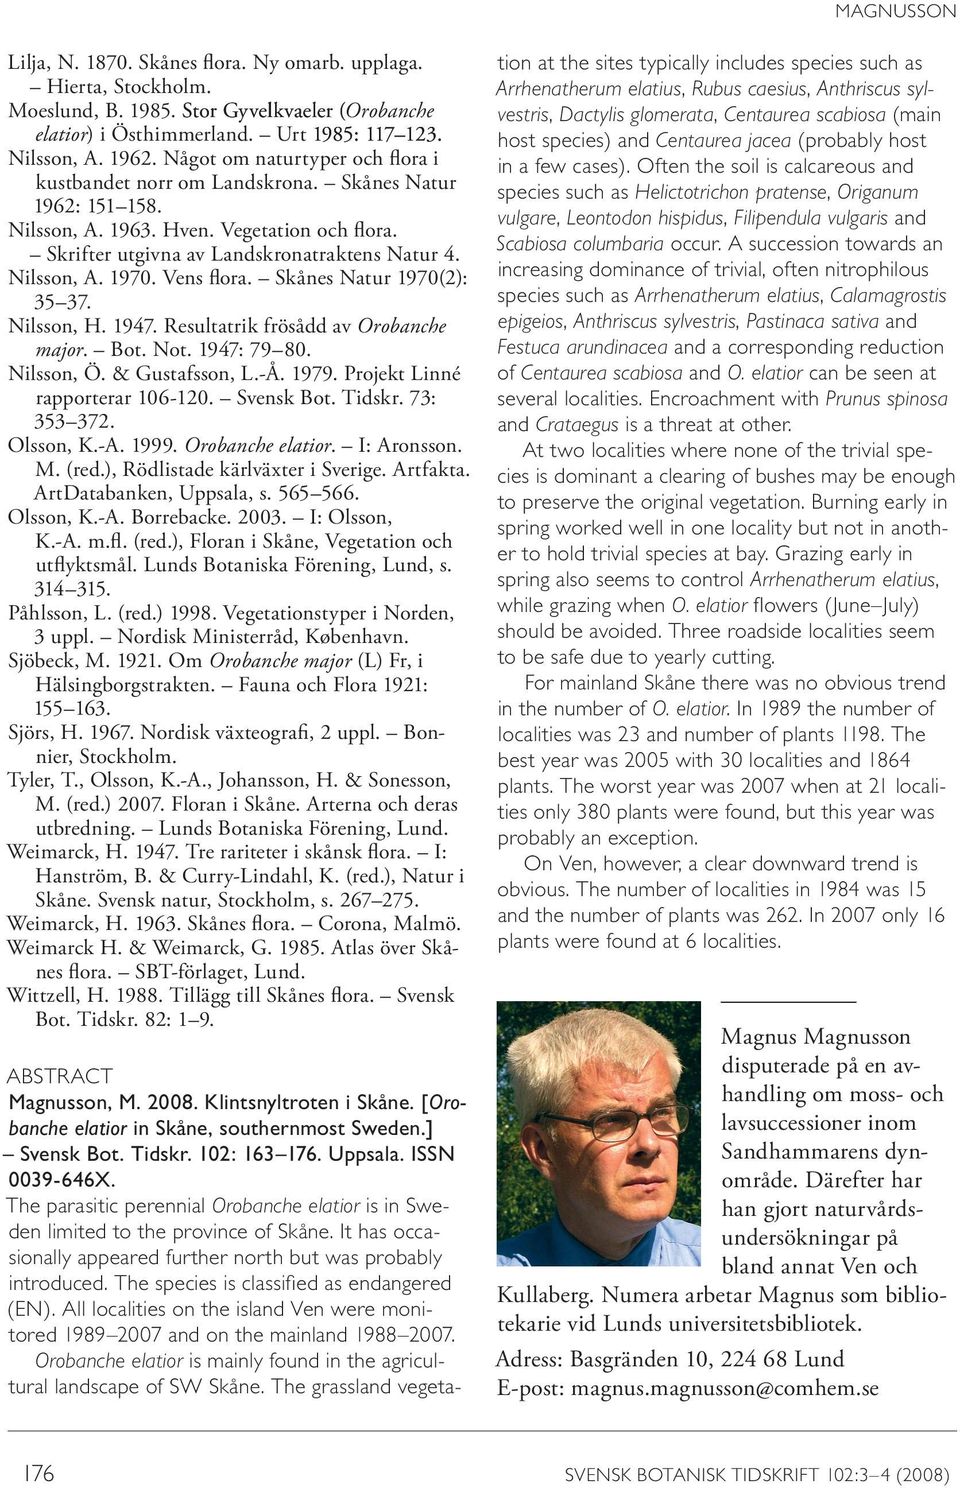 Vens flora. Skånes Natur 1970(2): 35 37. Nilsson, H. 1947. Resultatrik frösådd av Orobanche major. Bot. Not. 1947: 79 80. Nilsson, Ö. & Gustafsson, L.-Å. 1979. Projekt Linné rapporterar 106-120.